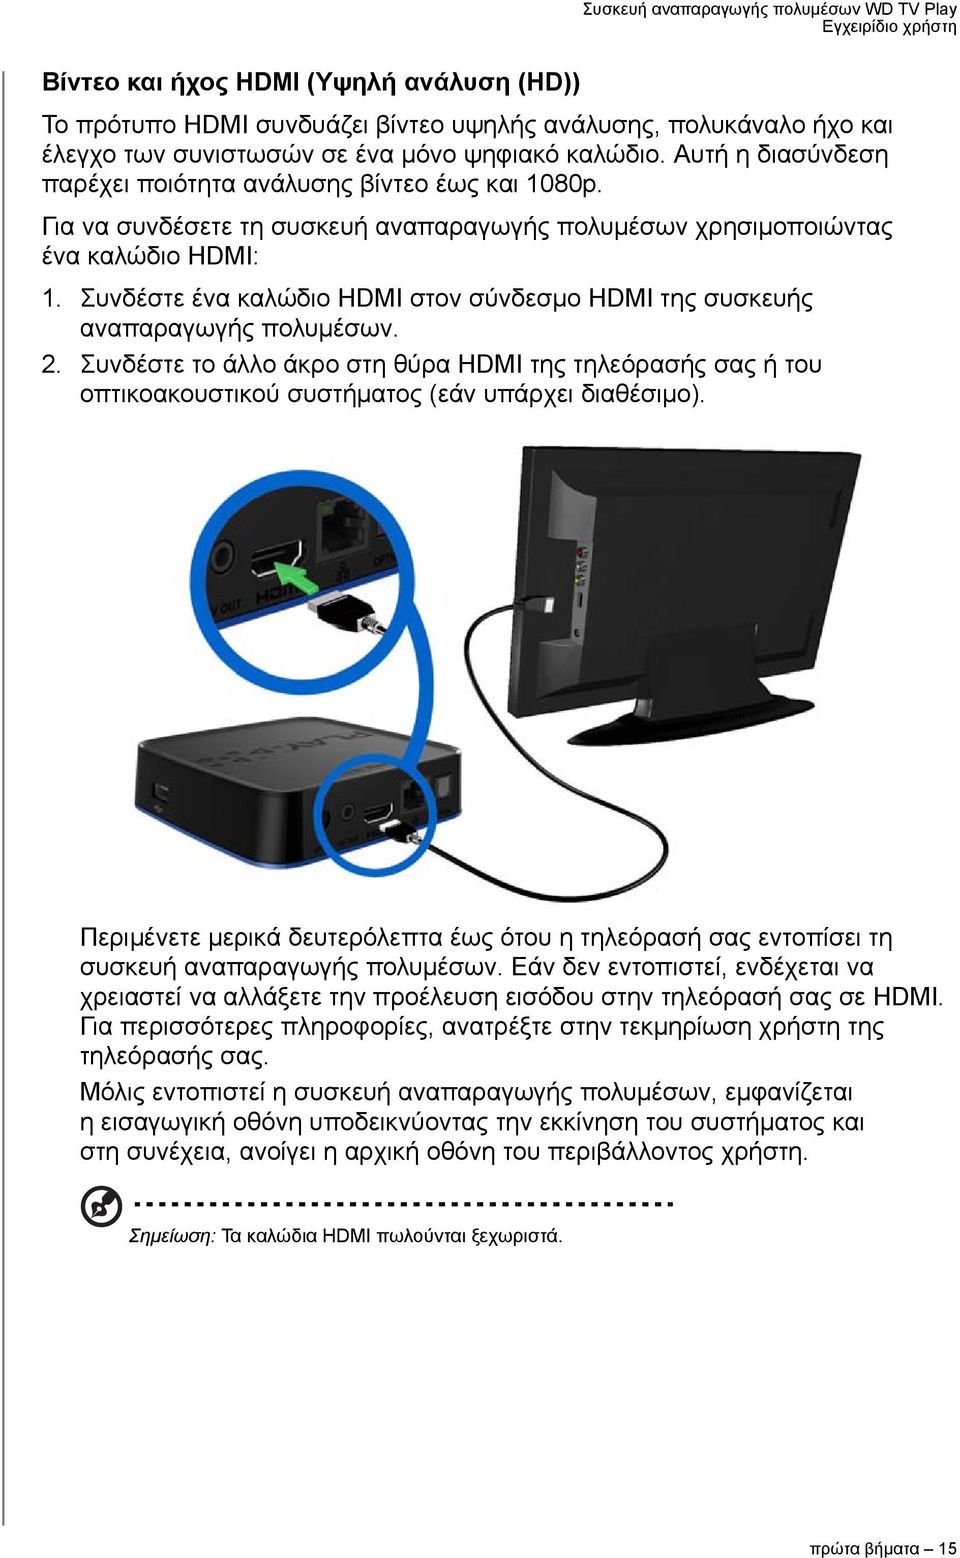 Συνδέστε ένα καλώδιο HDMI στον σύνδεσμο HDMI της συσκευής αναπαραγωγής πολυμέσων. 2. Συνδέστε το άλλο άκρο στη θύρα HDMI της τηλεόρασής σας ή του οπτικοακουστικού συστήματος (εάν υπάρχει διαθέσιμο).